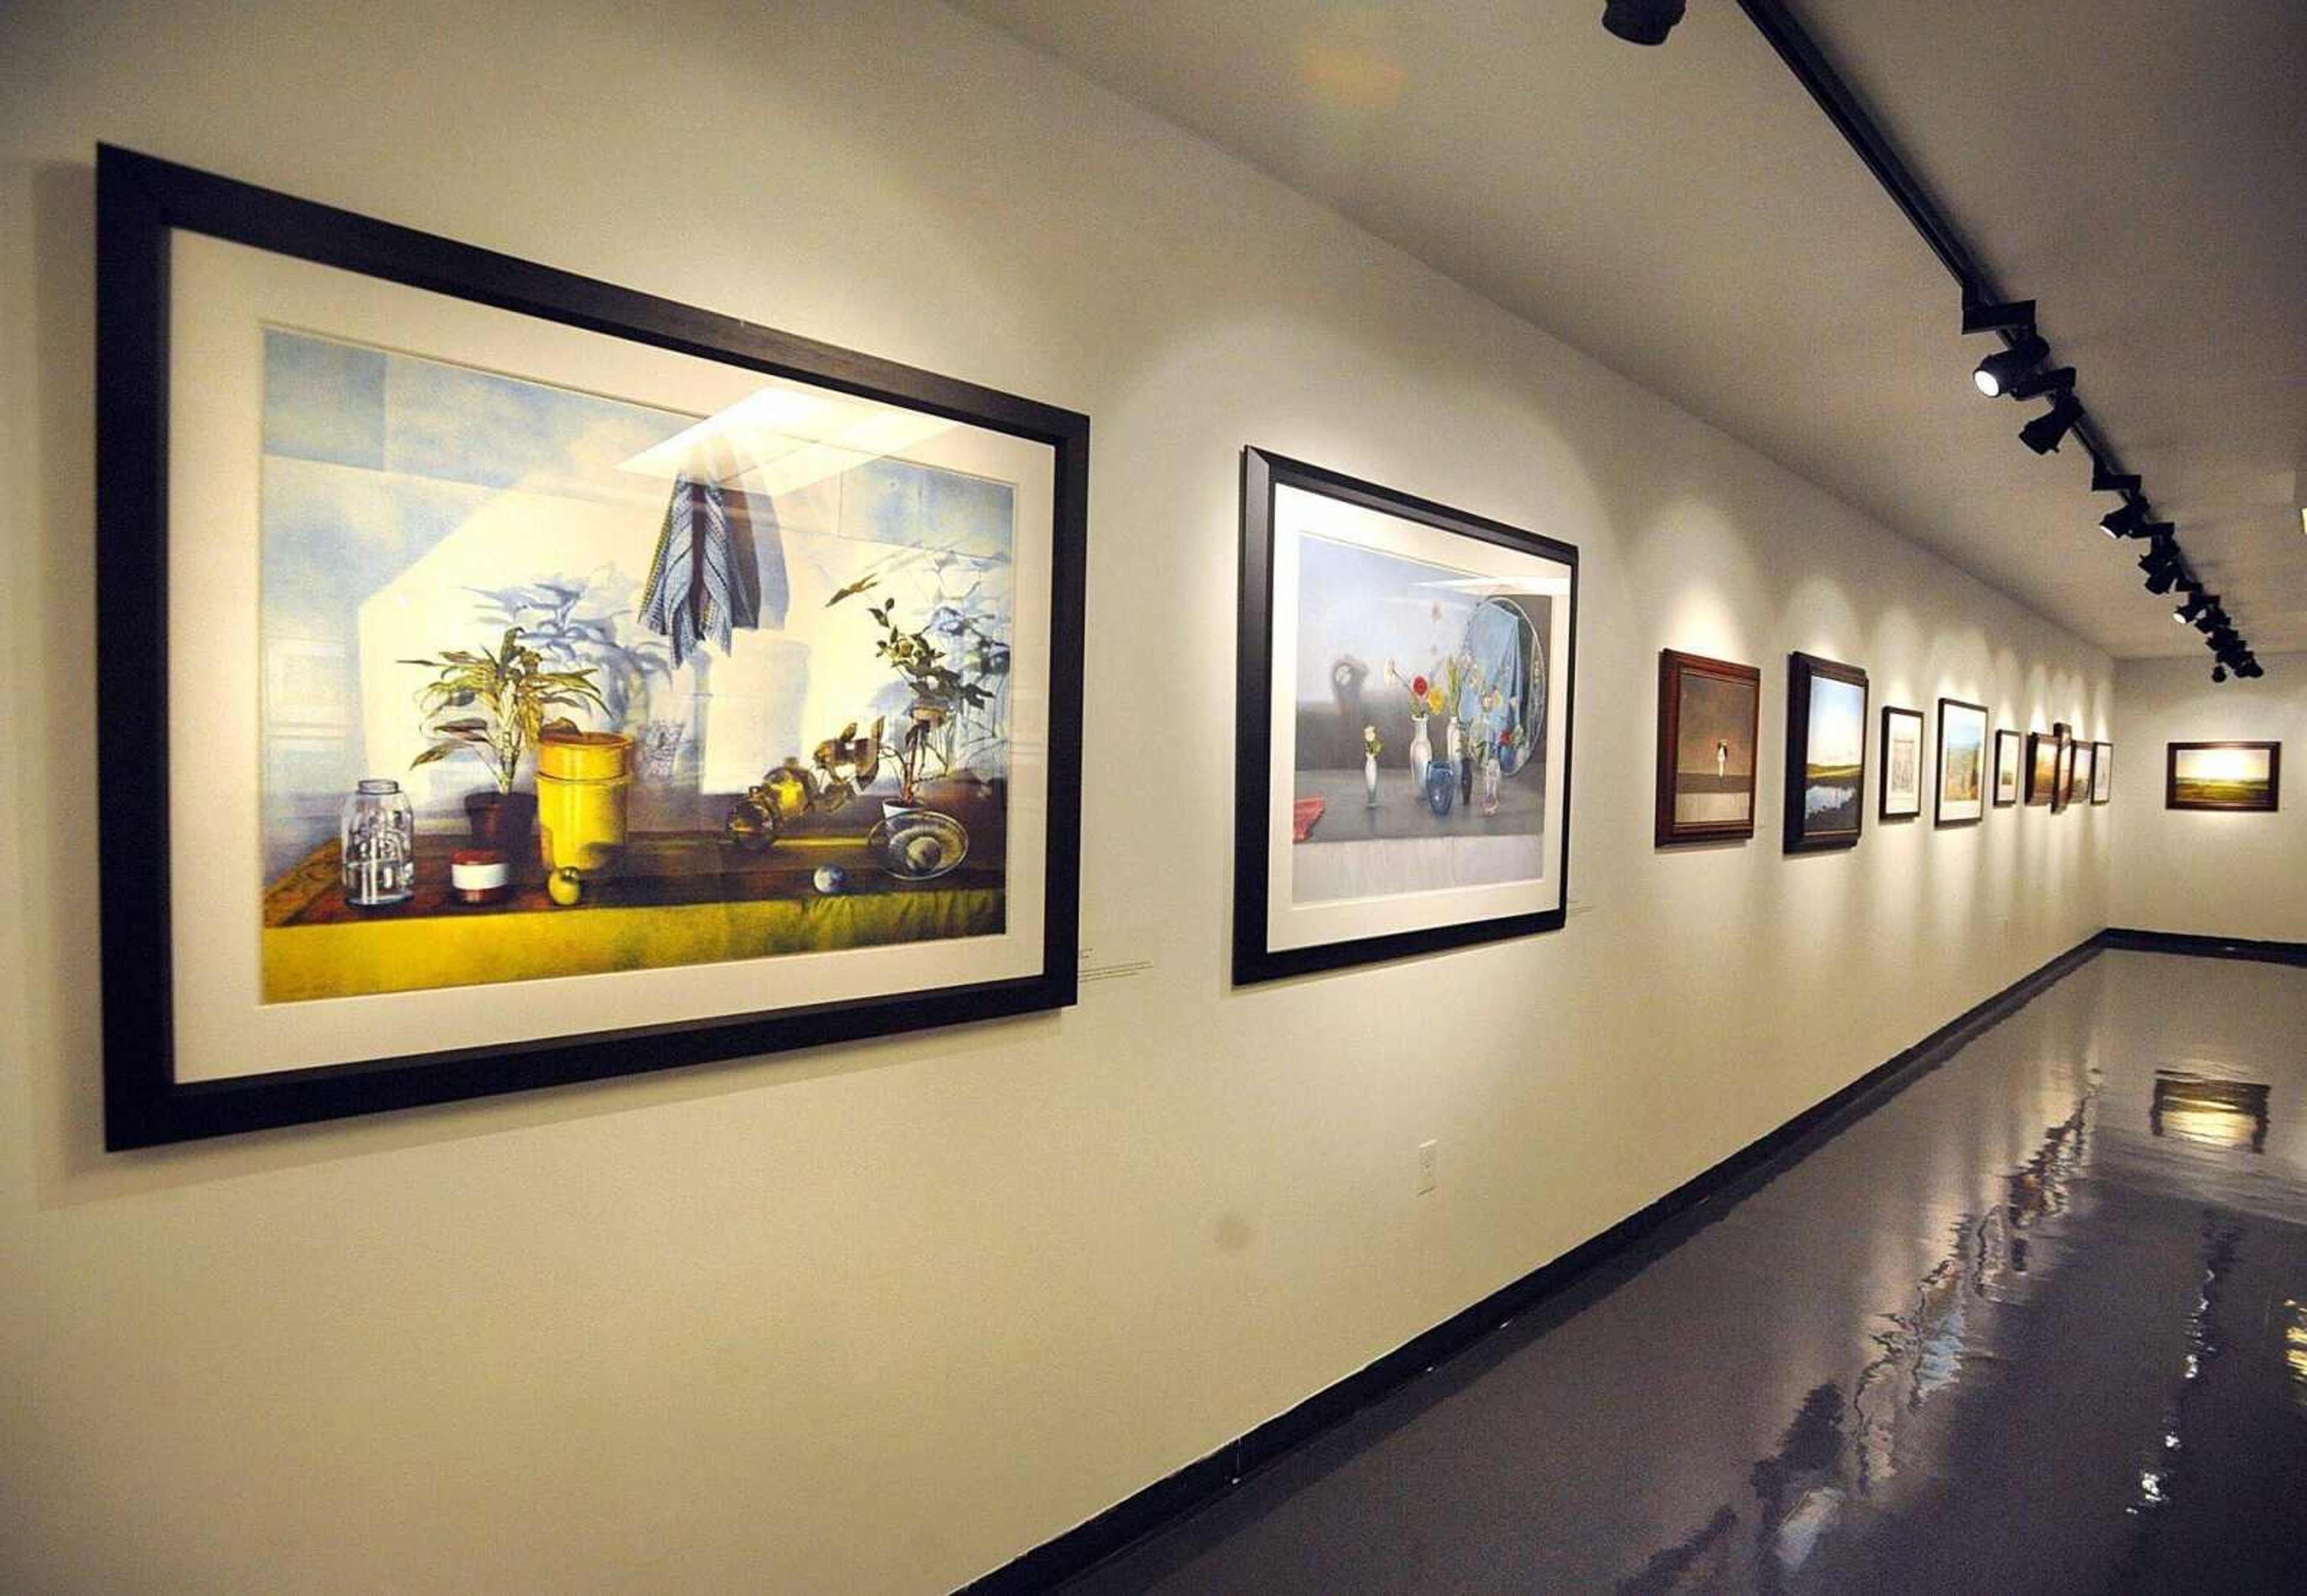 2012 Outstanding Printmaker featured in Art Gallery exhibit